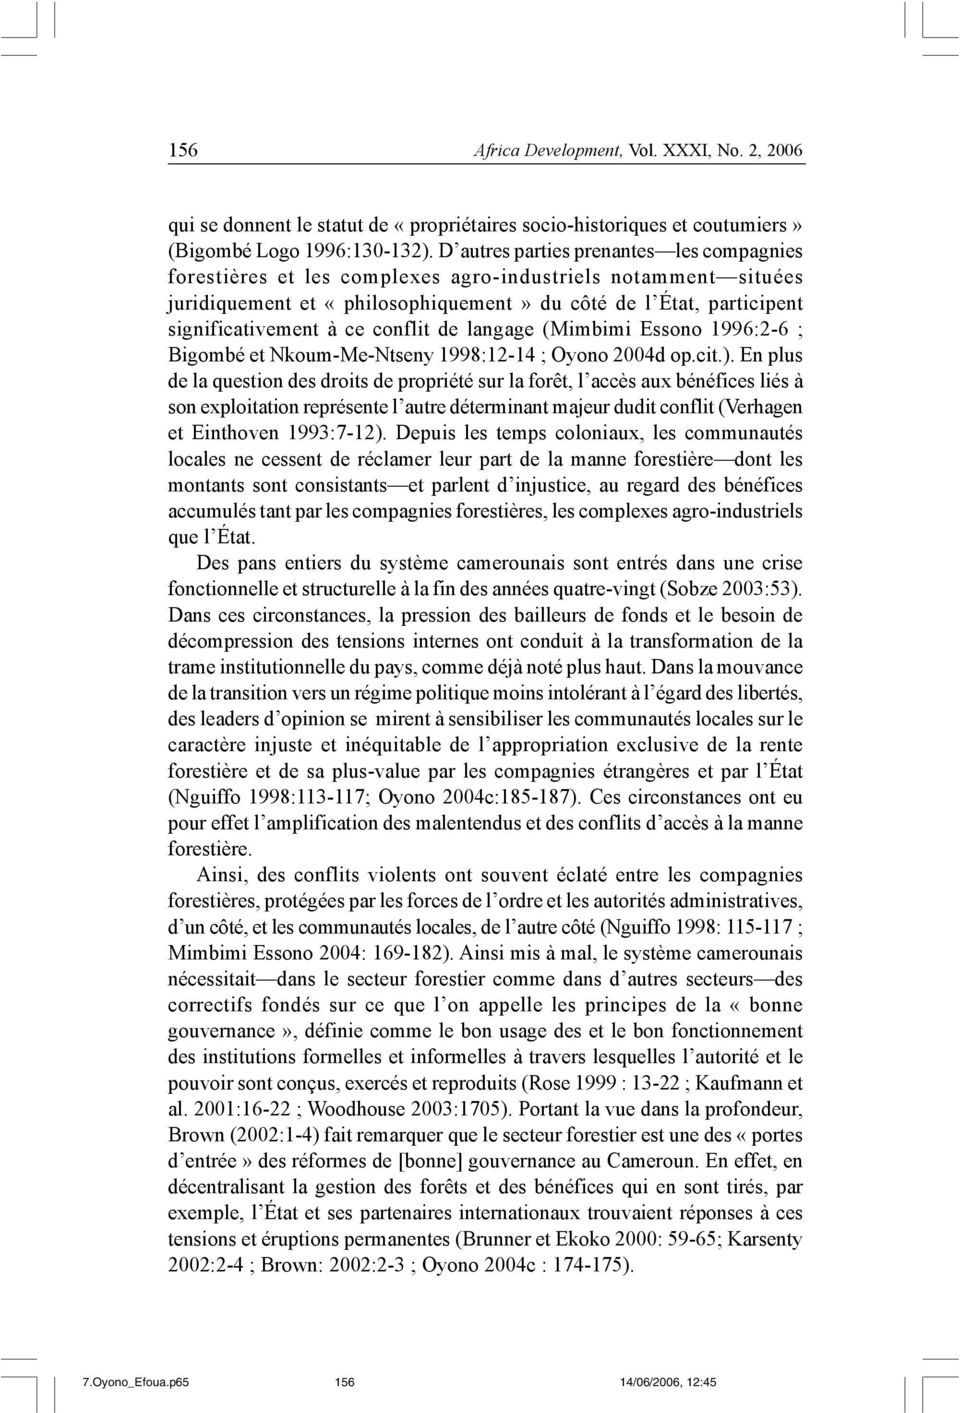 conflit de langage (Mimbimi Essono 1996:2-6 ; Bigombé et Nkoum-Me-Ntseny 1998:12-14 ; Oyono 2004d op.cit.).